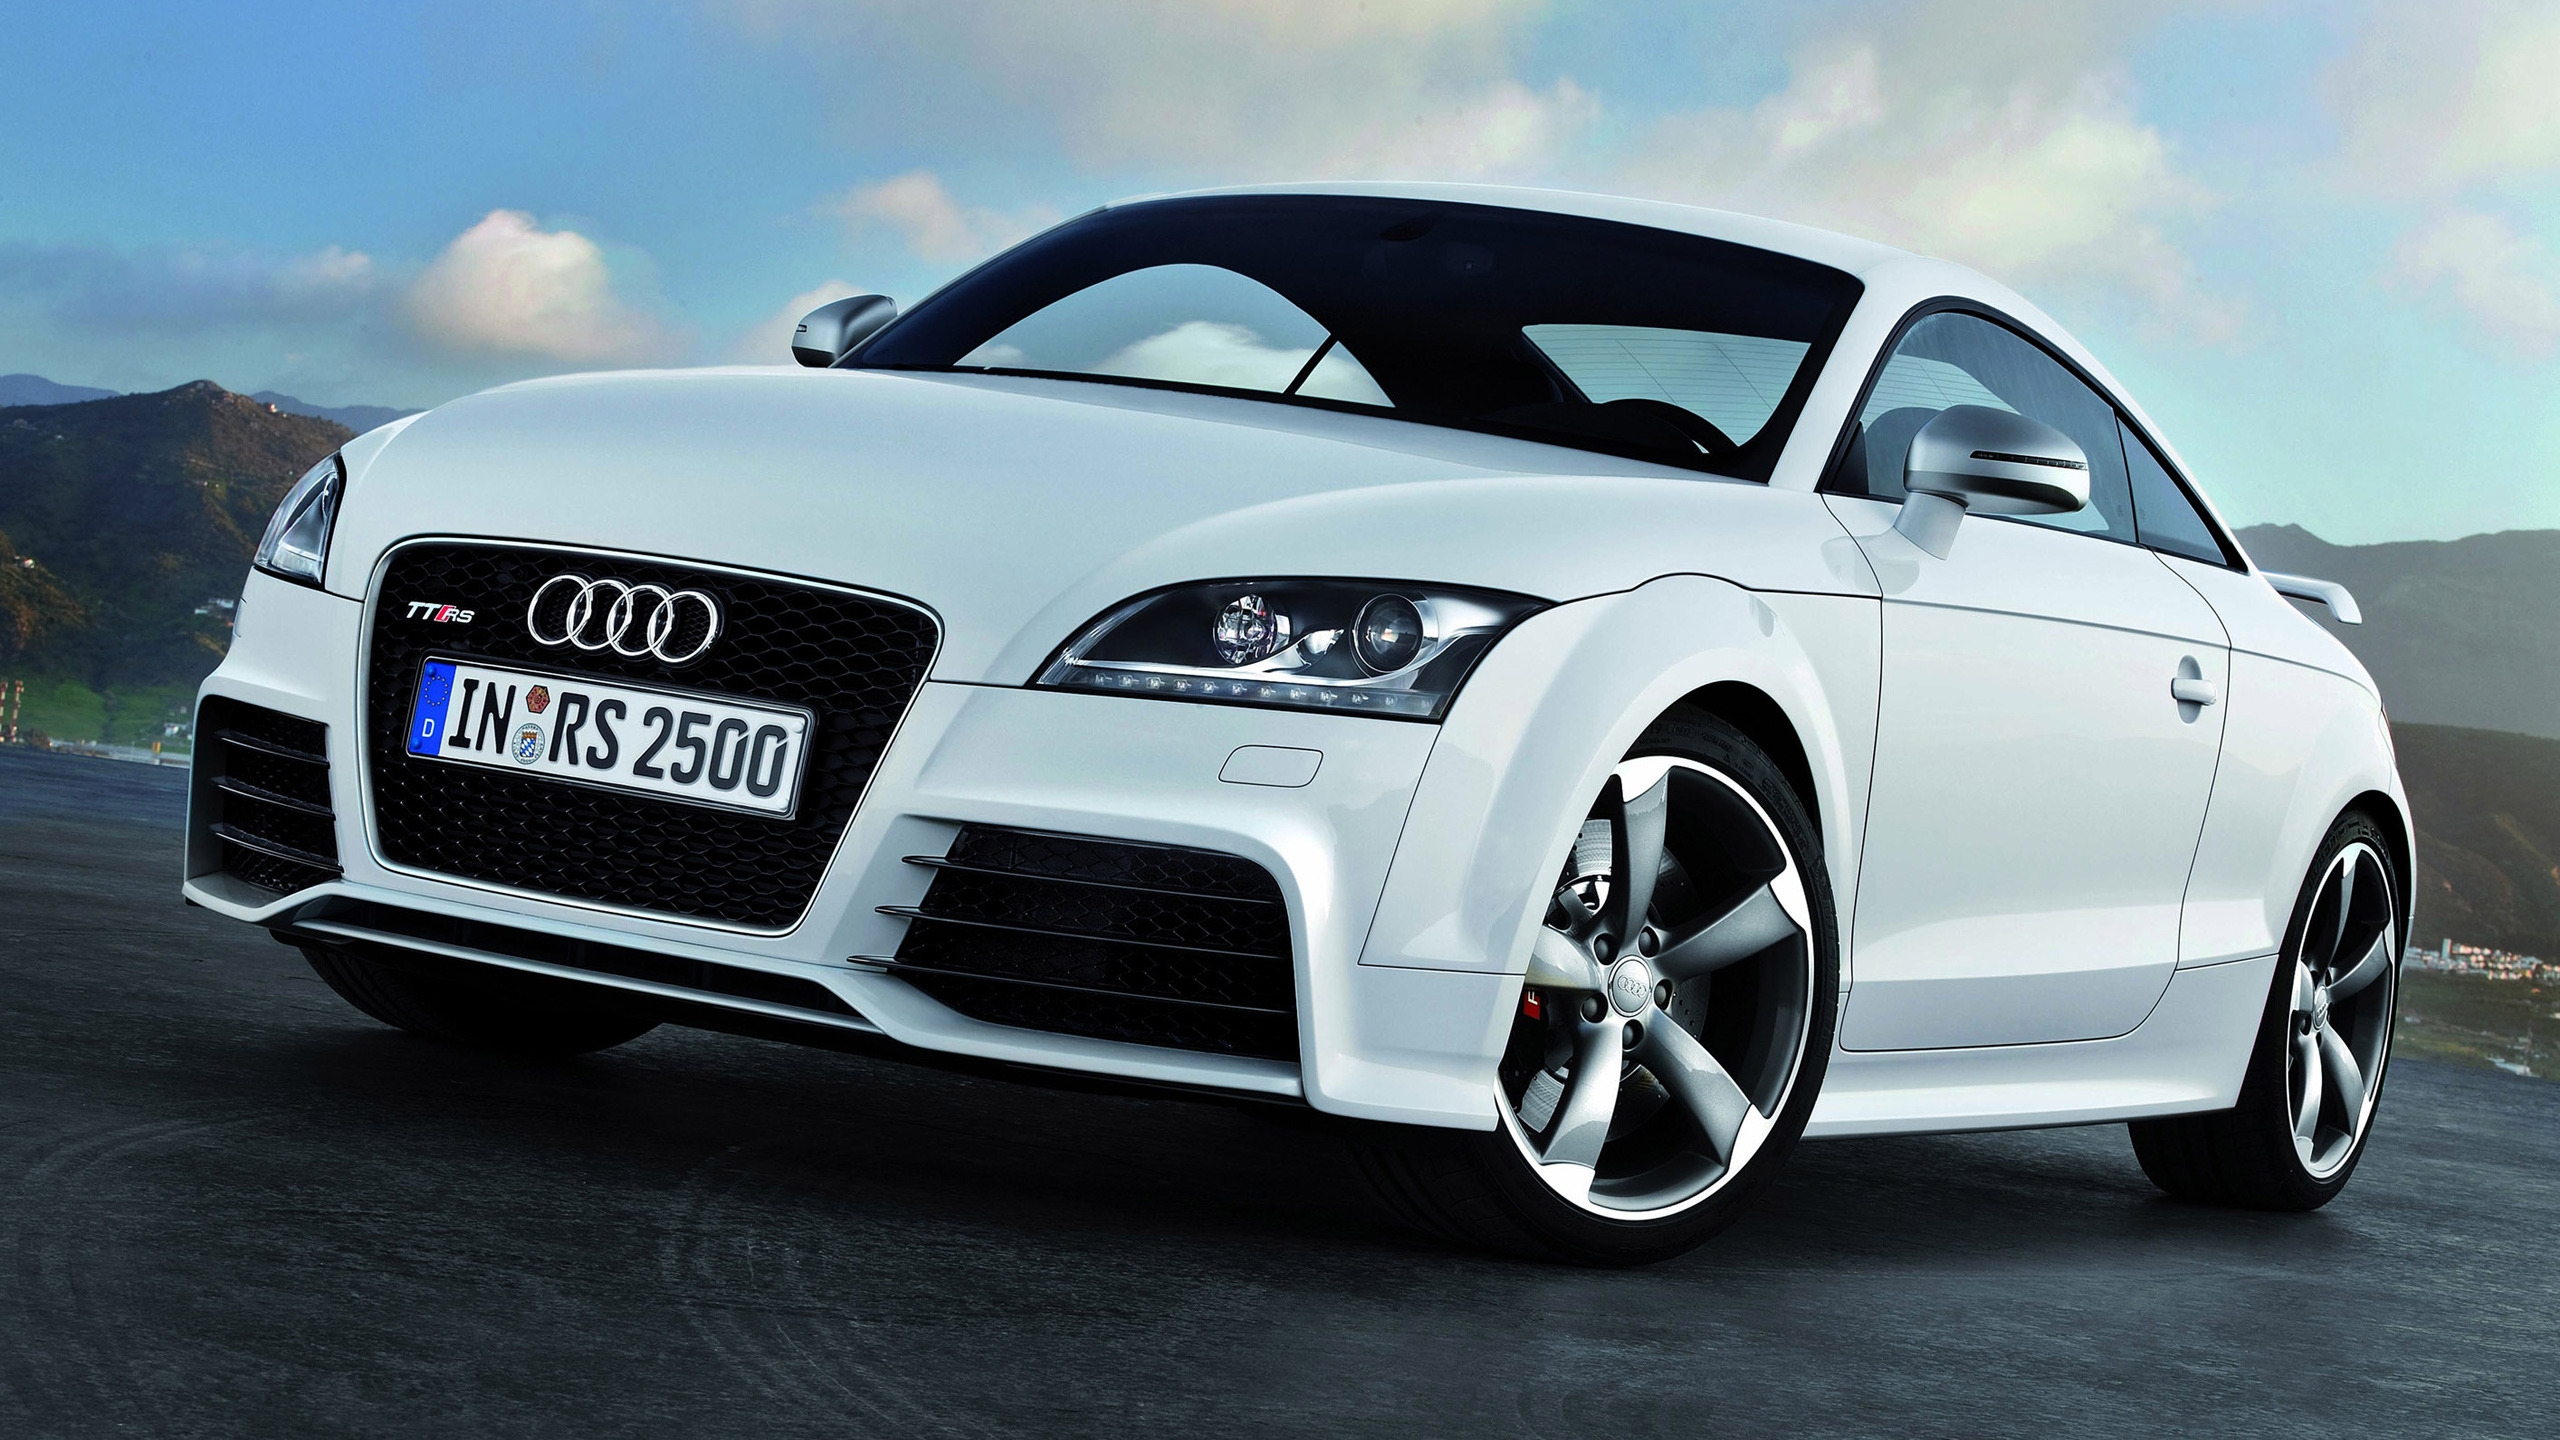 2012 Audi TT RS for 2560x1440 HDTV resolution